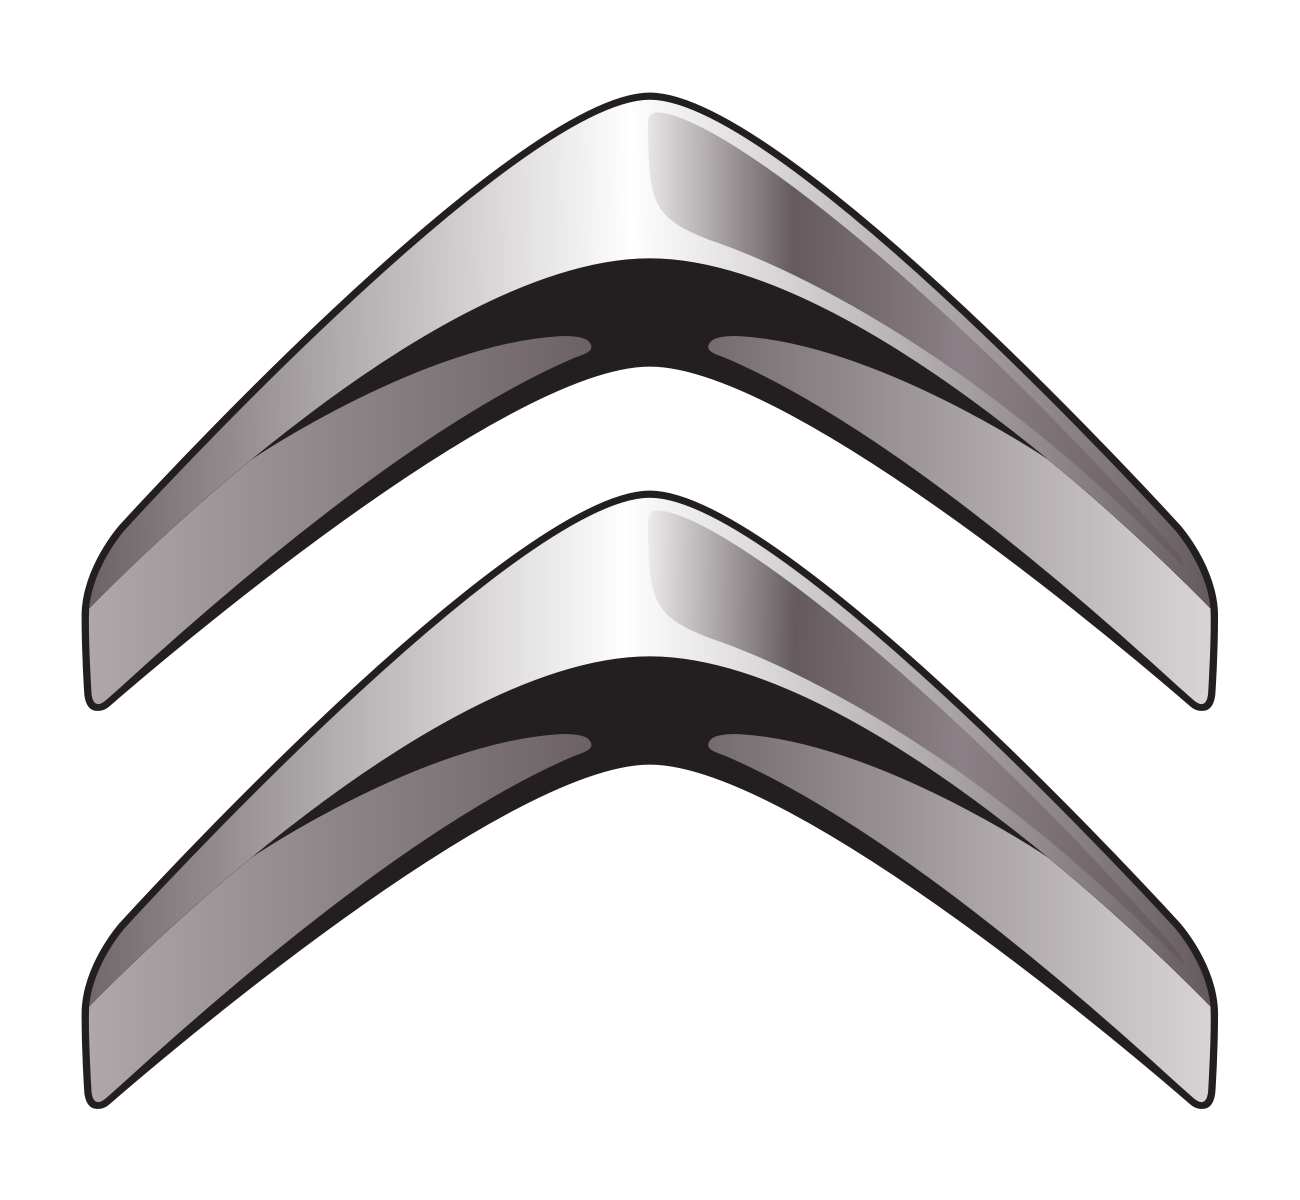 Citroën Logo Transparent Images